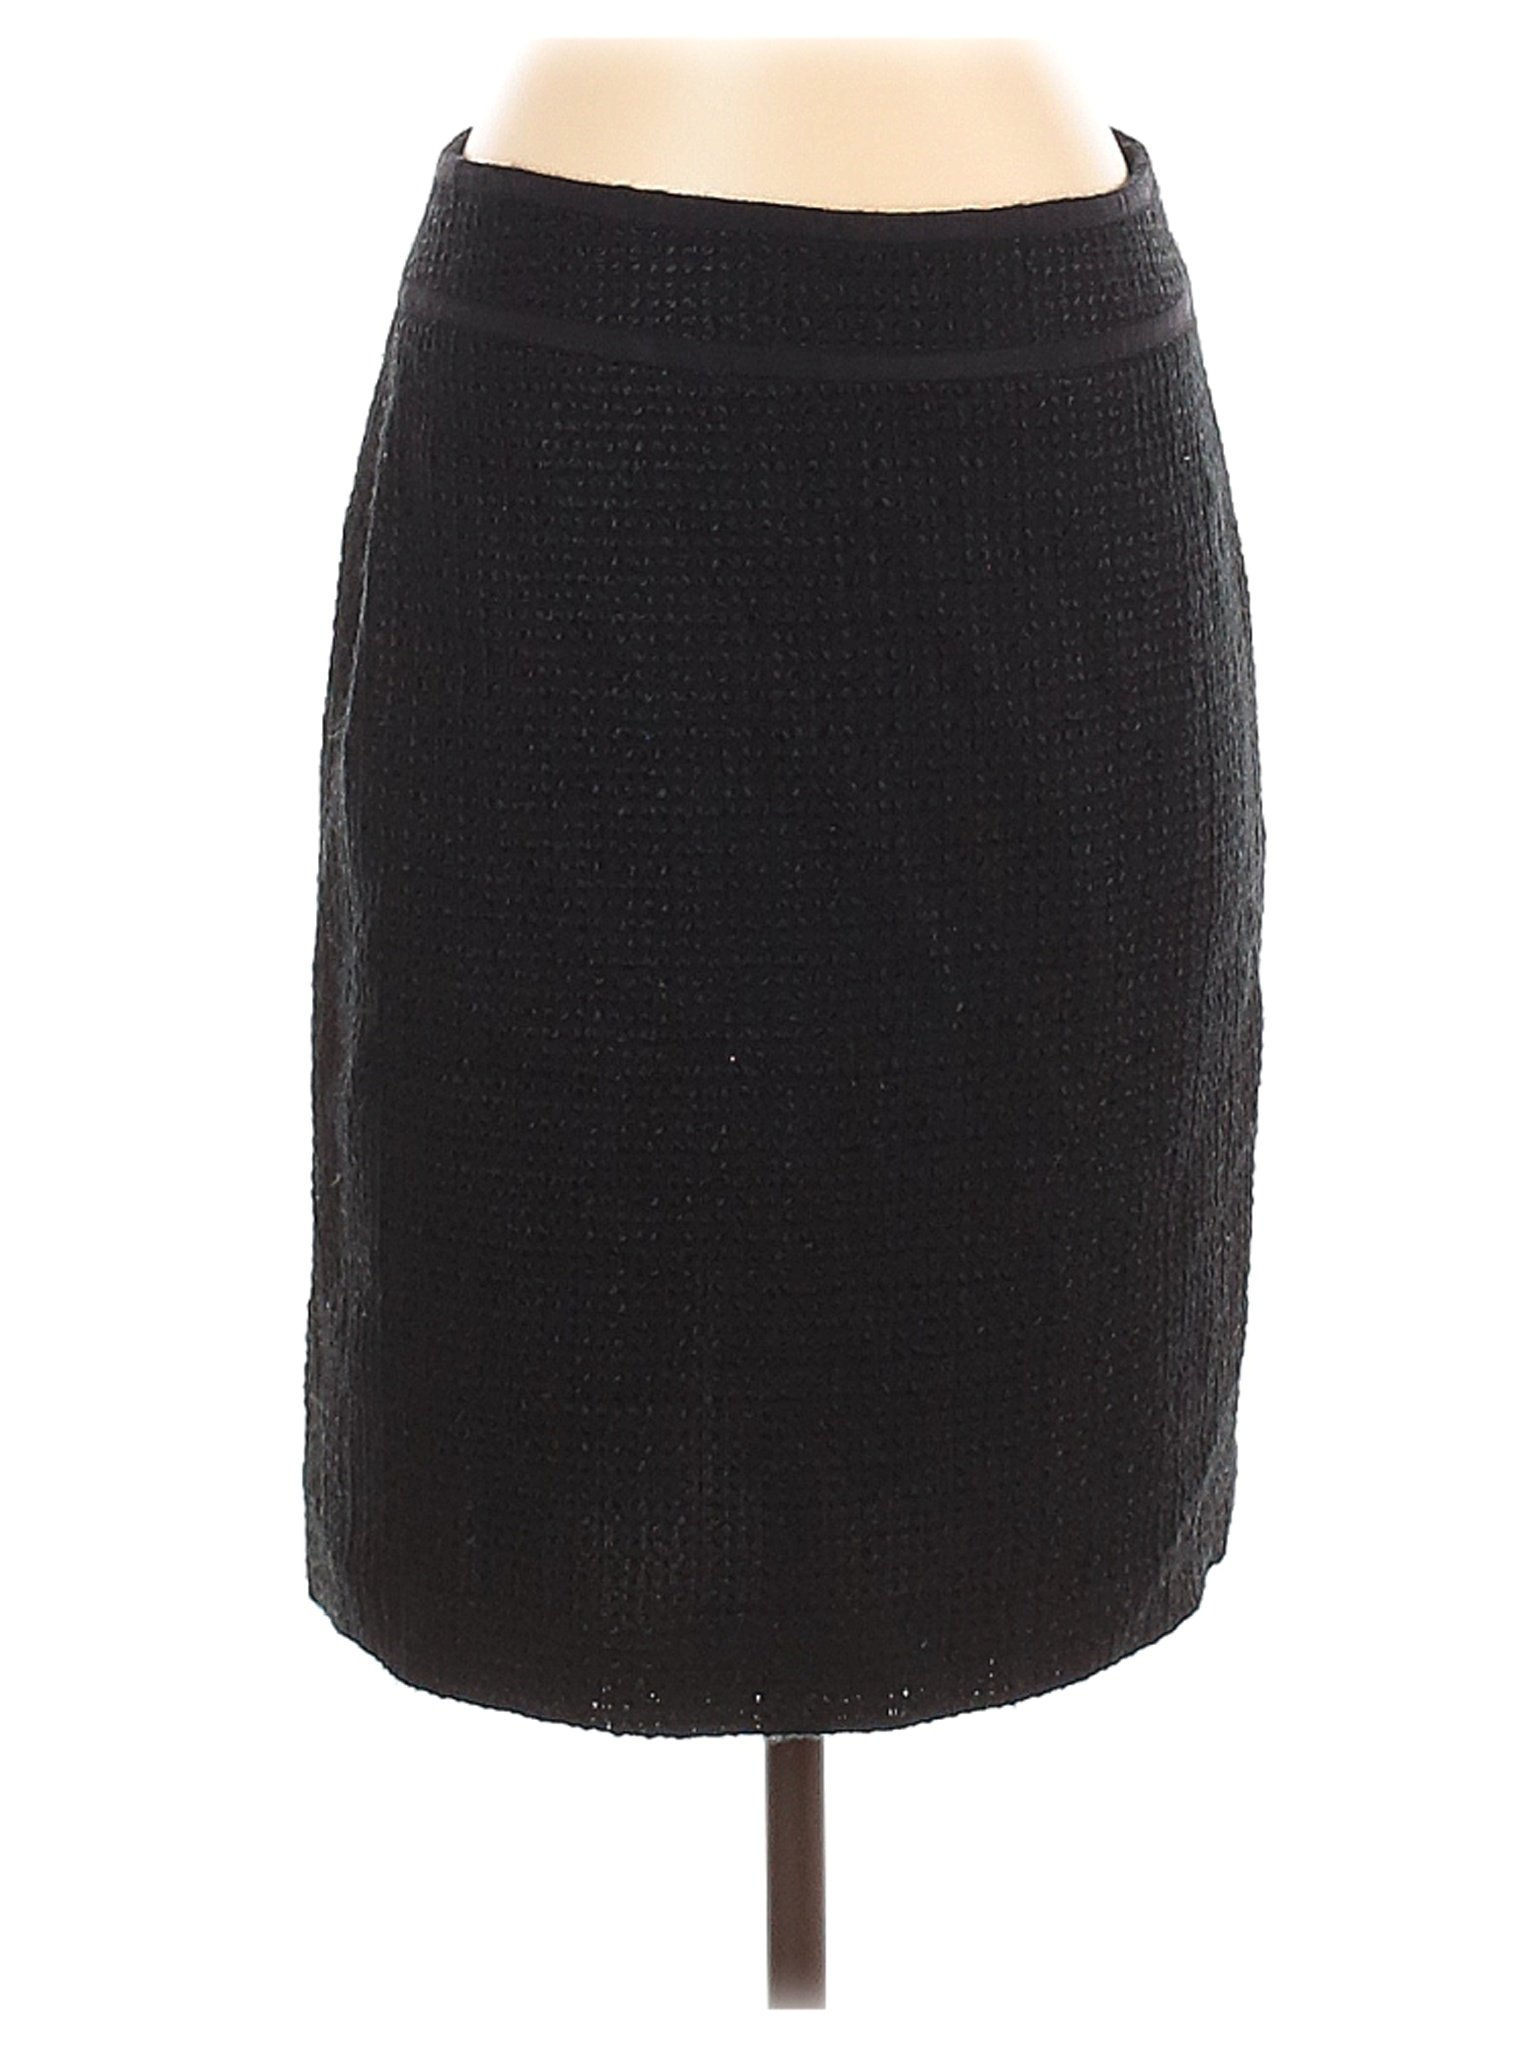 White House Black Market Women Black Casual Skirt 2 | eBay